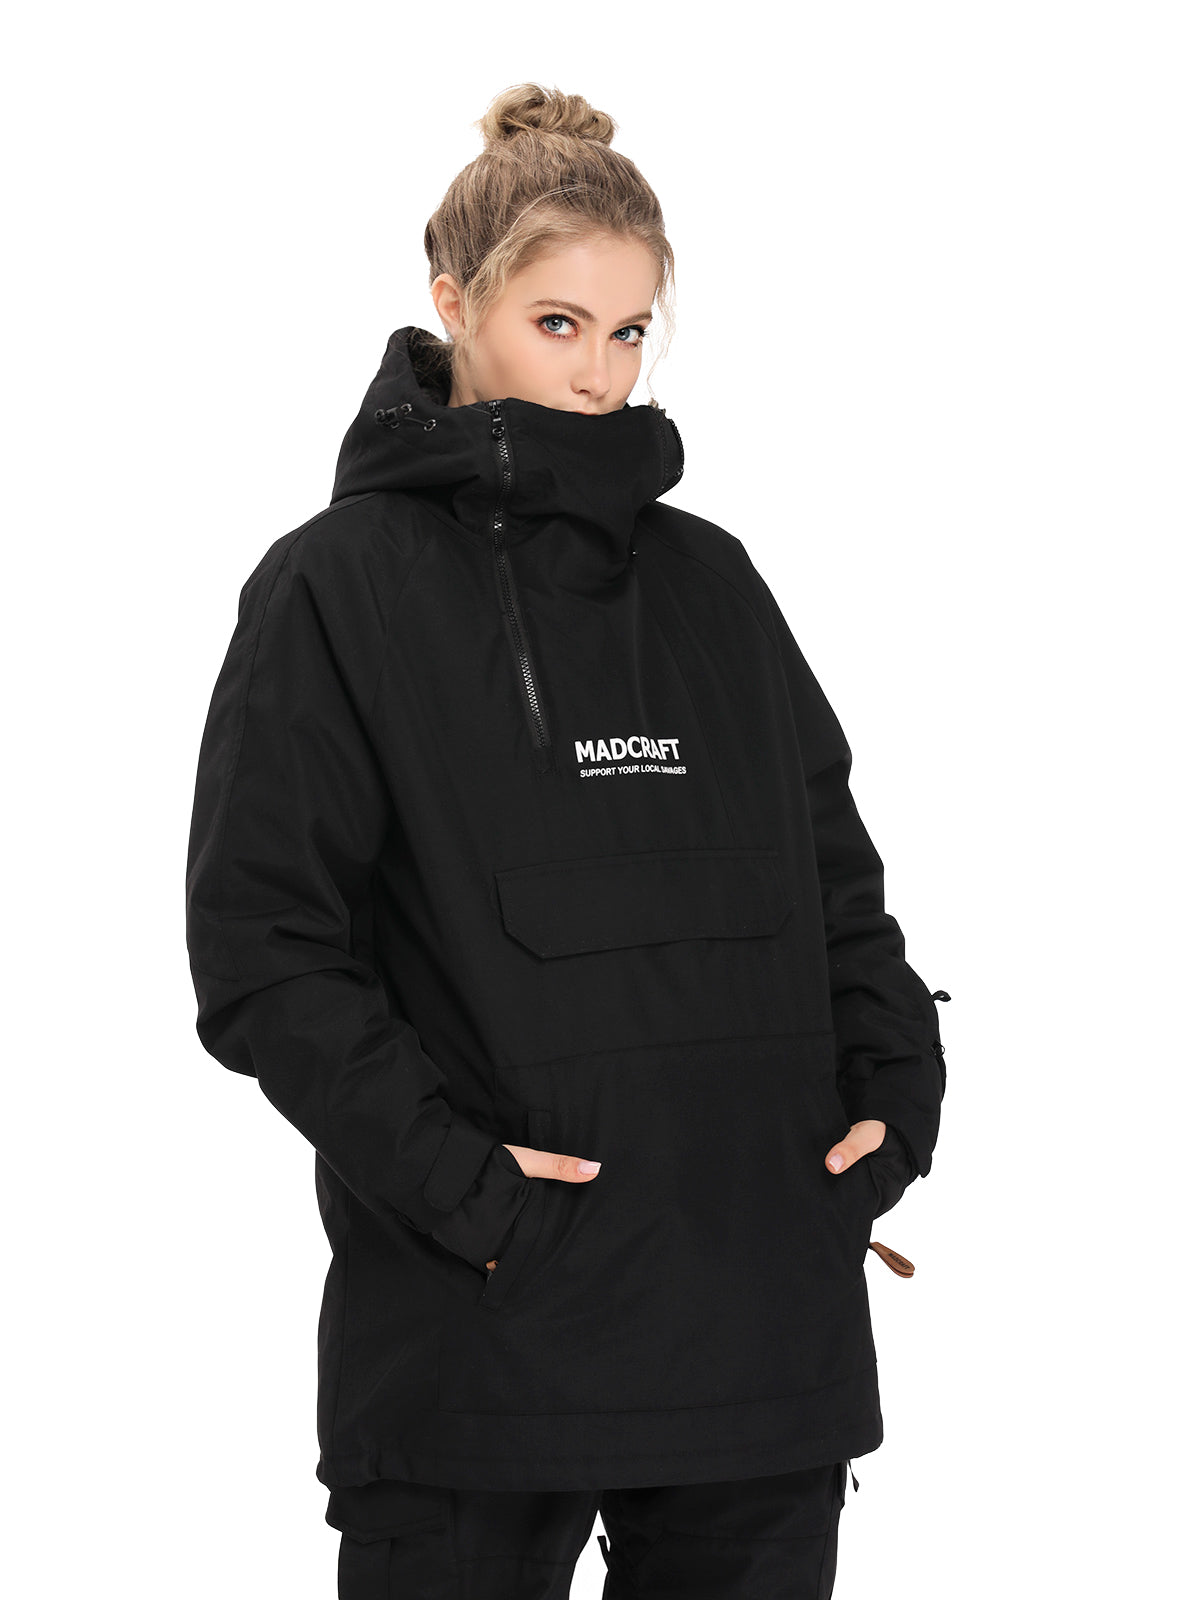 SNBOCON Unisex Womens Mens Pullover Snow Jacket